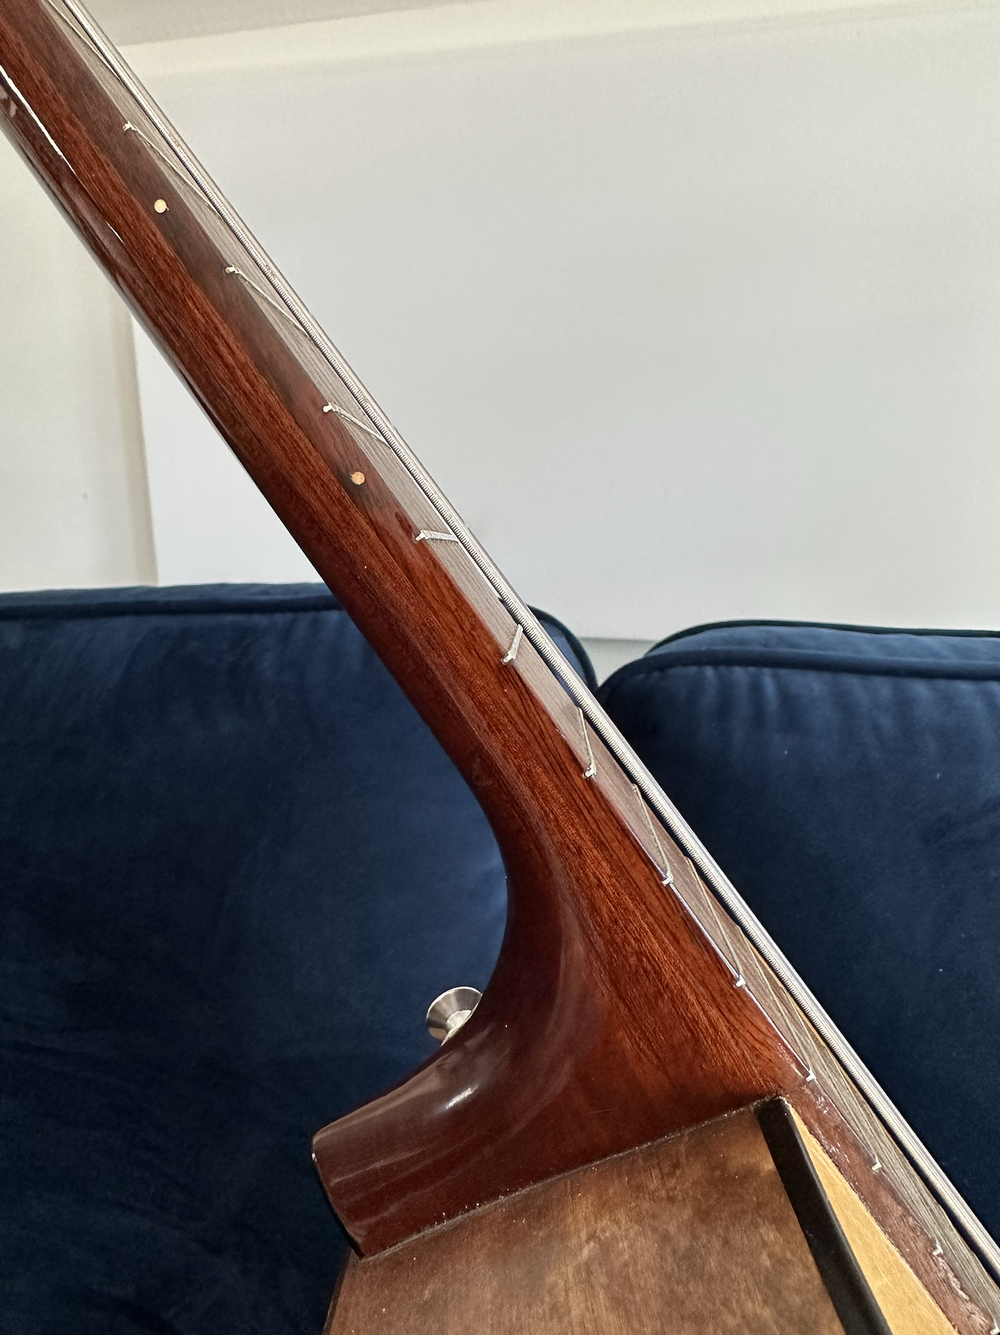 Goya Nylon String Guitar - 1960s or 70s. — Jackson Emmer